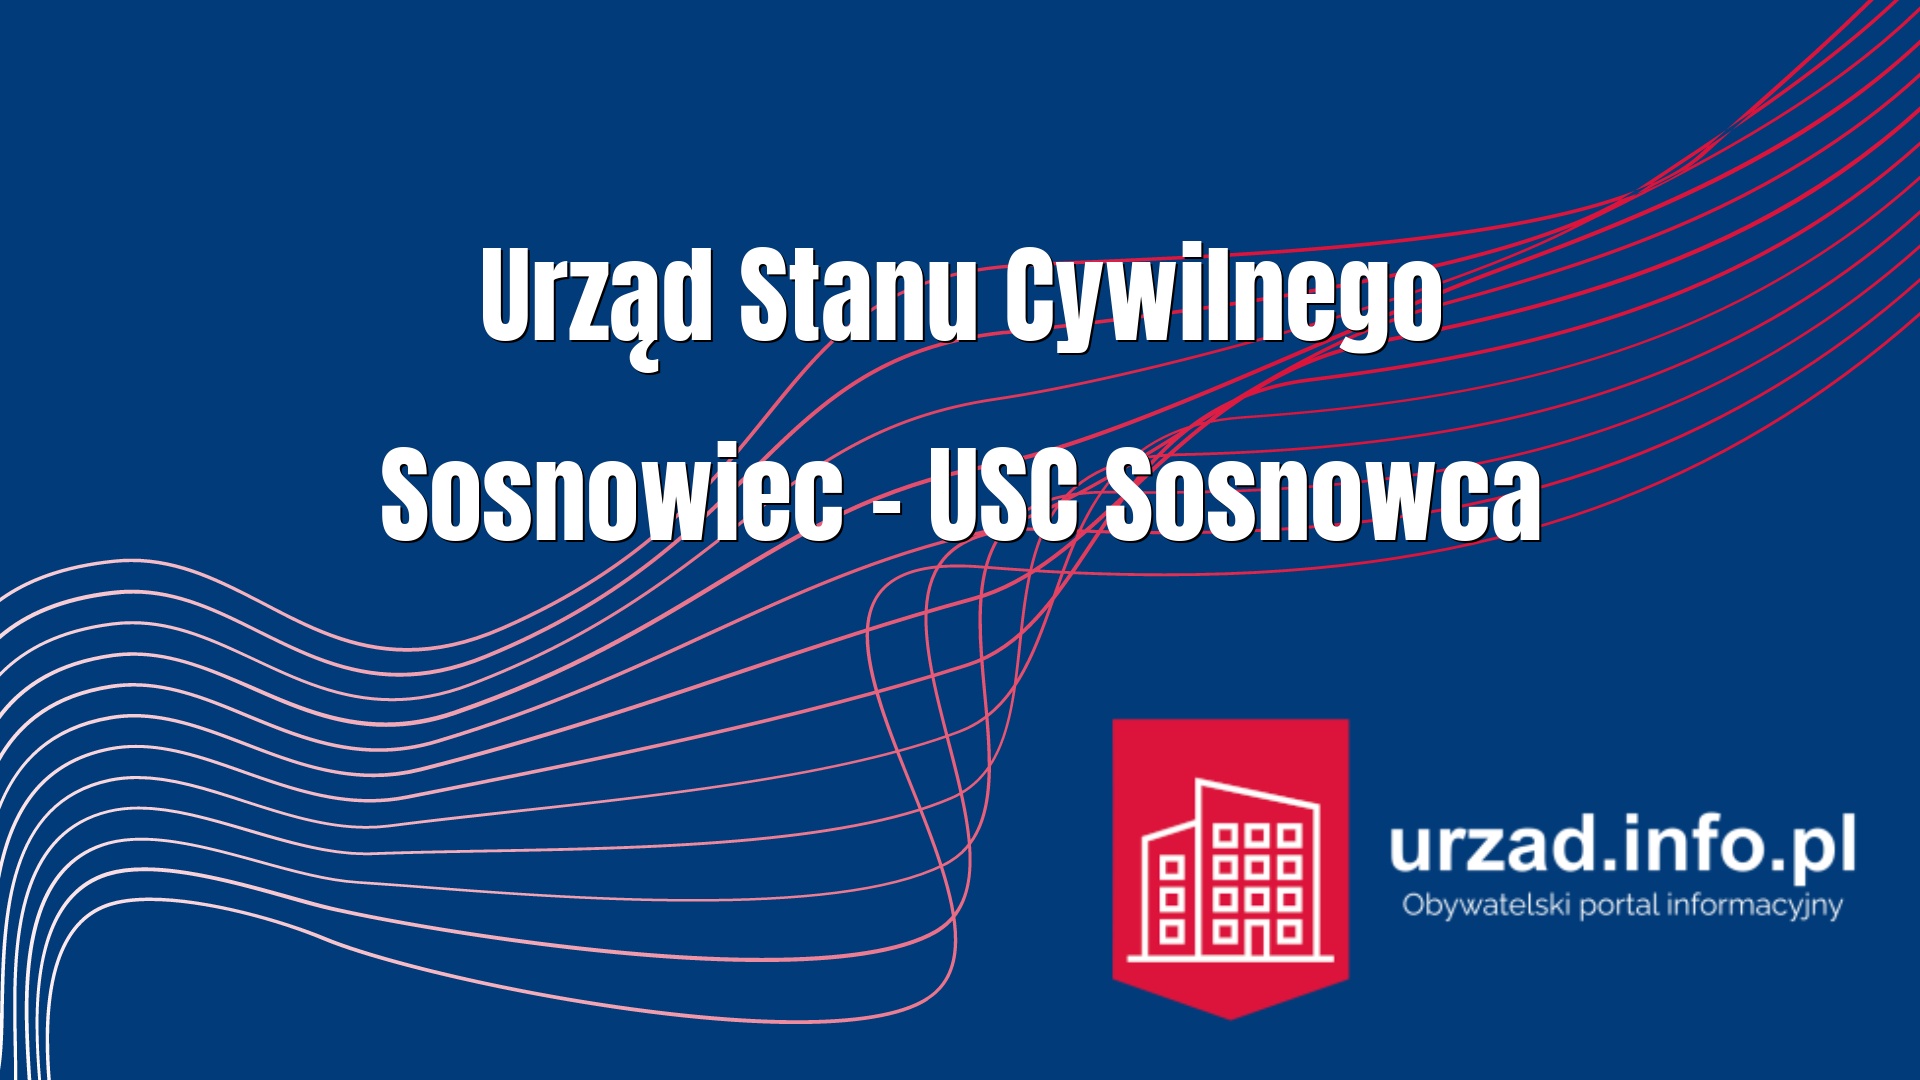 Urząd Stanu Cywilnego Sosnowiec – USC Sosnowca